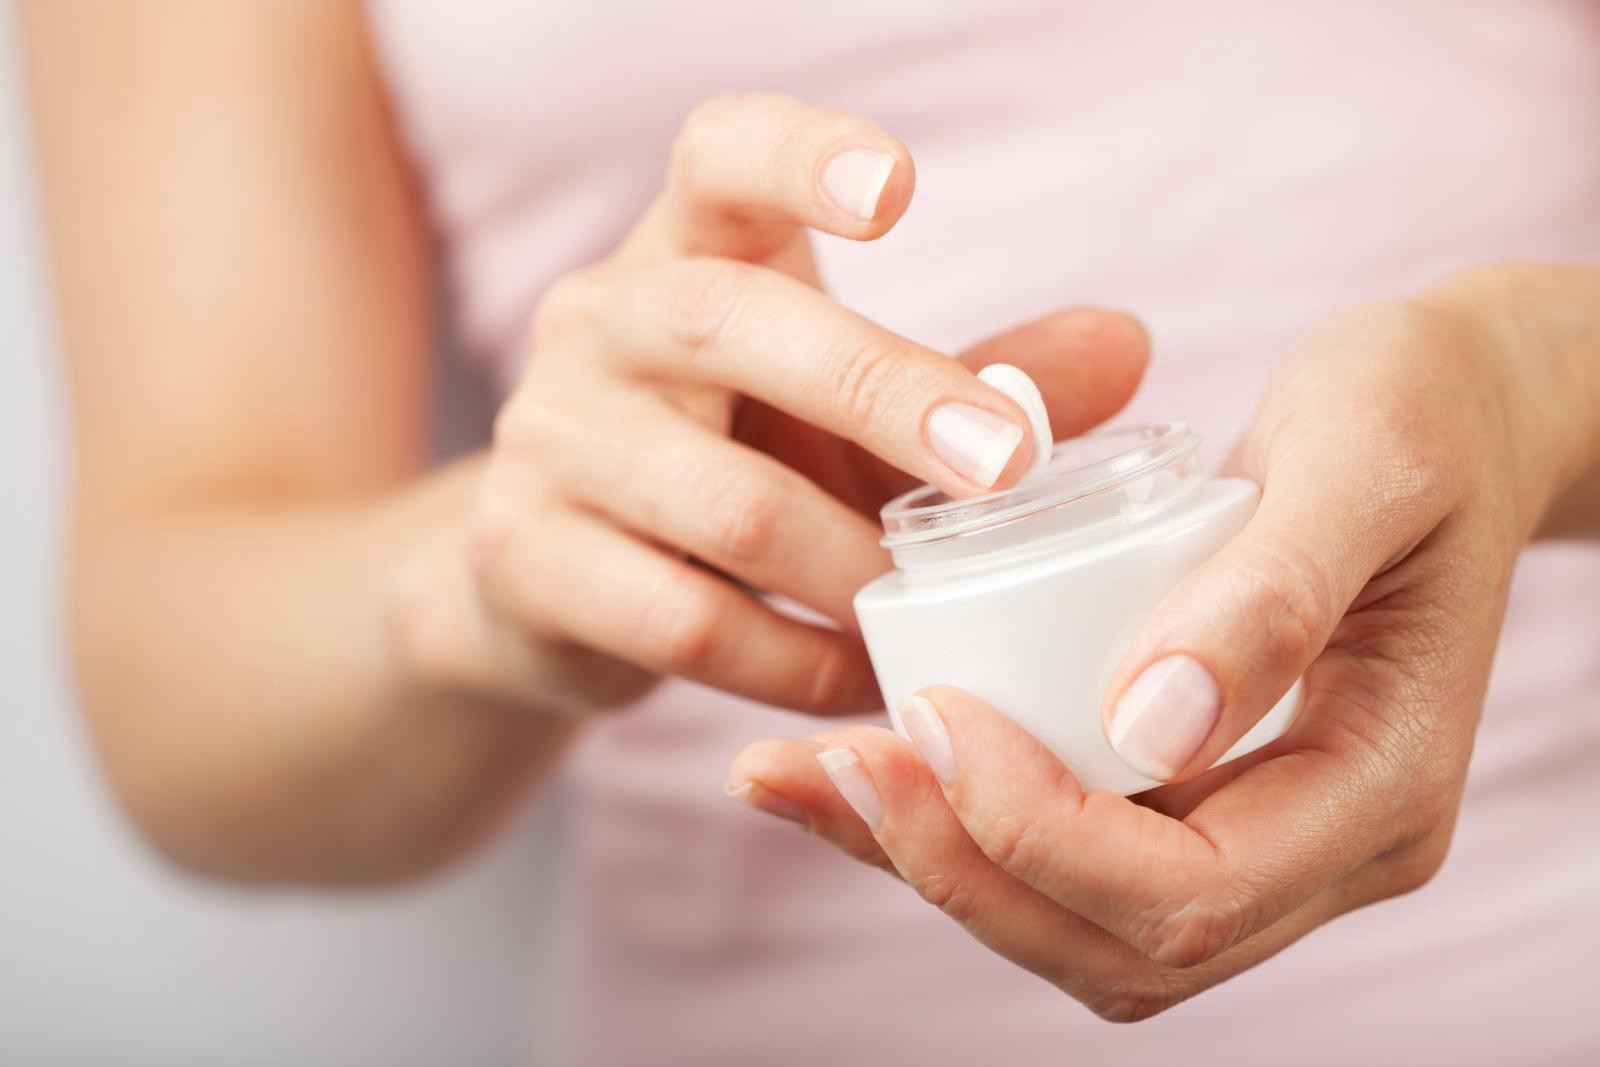   Sau khi rửa mặt, bạn nên thoa kem dưỡng luôn để hấp thu tốt nhất các dưỡng chất trên da  